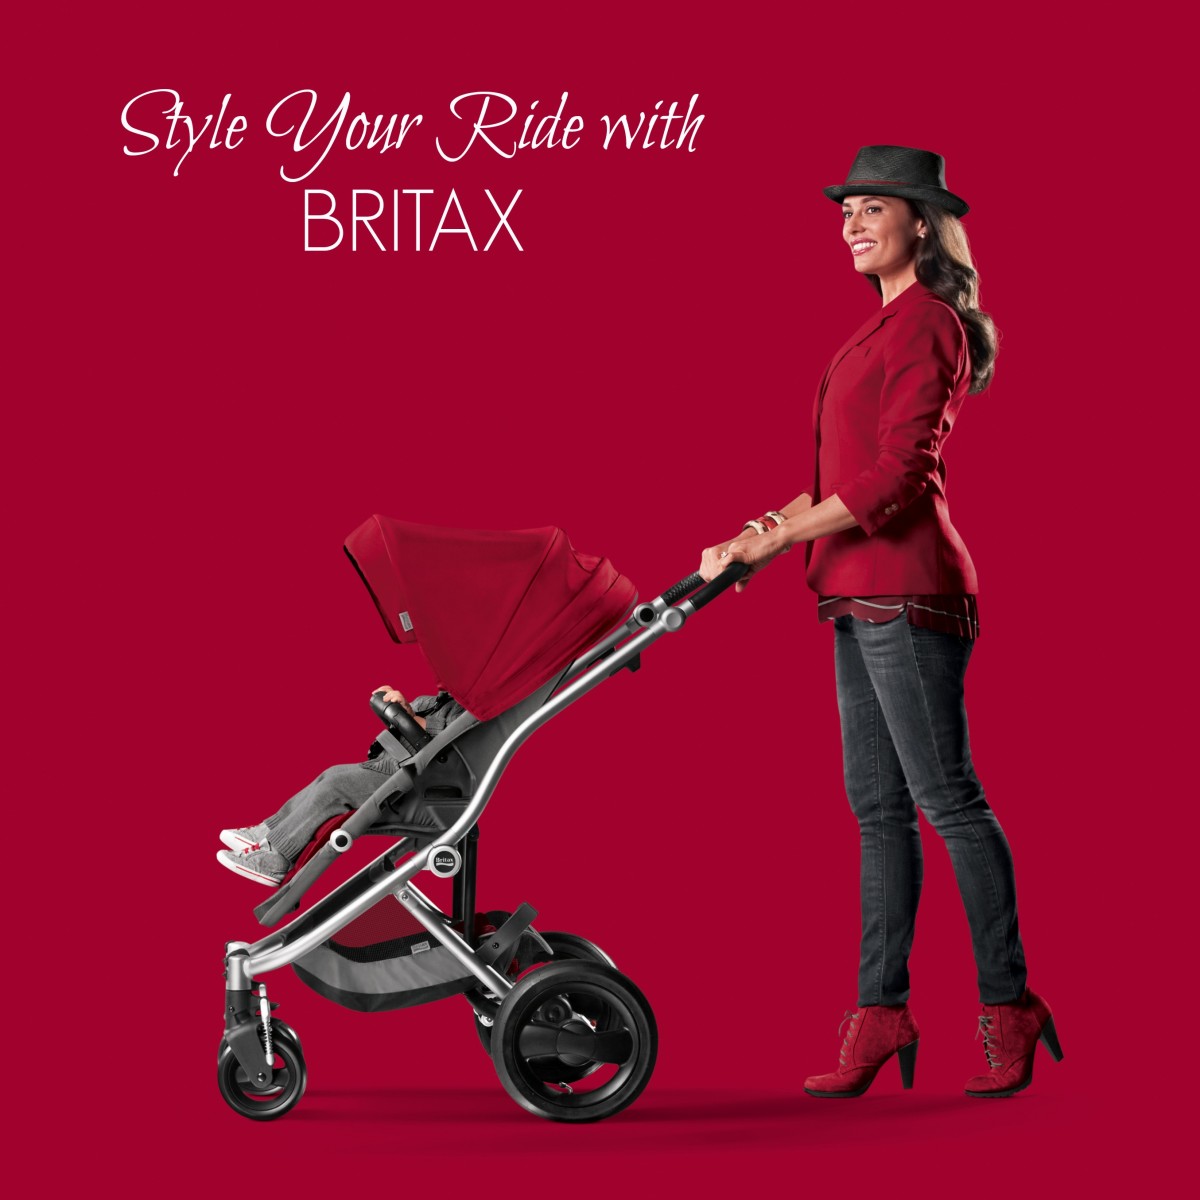 britax affinity stroller accessories